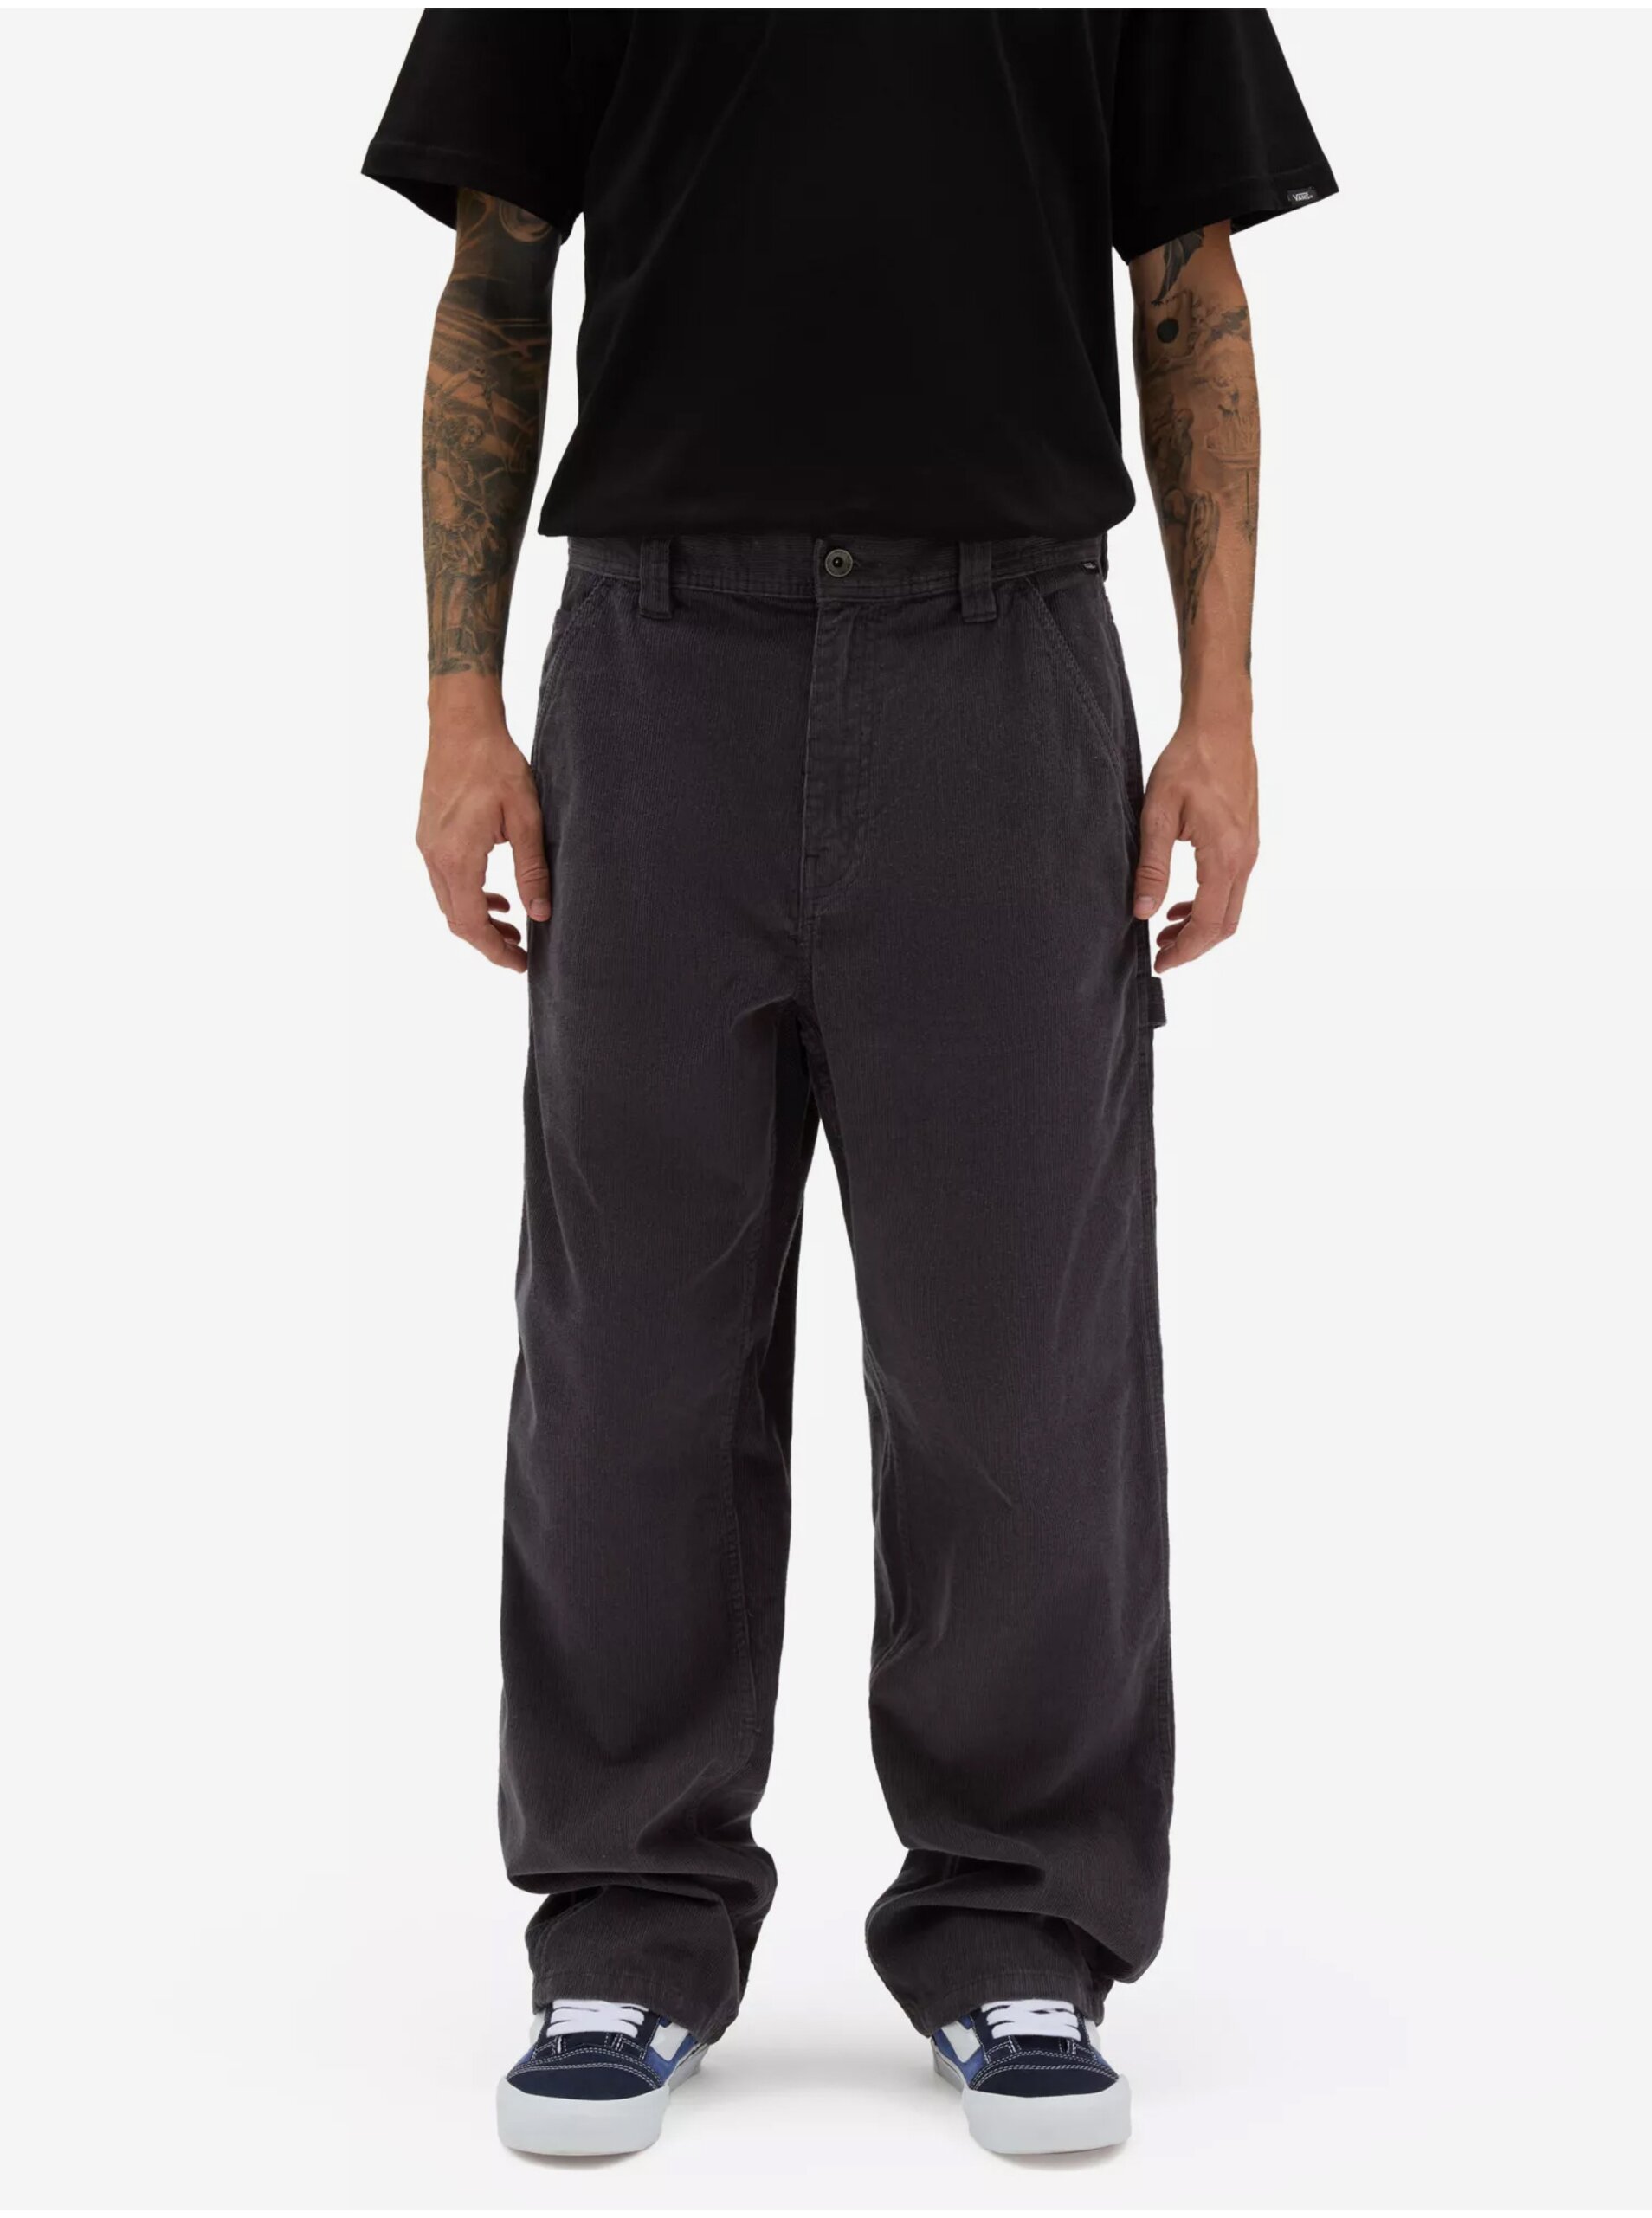 E-shop Tmavě šedé pánské manšestrové kalhoty VANS Drill Chore Loose